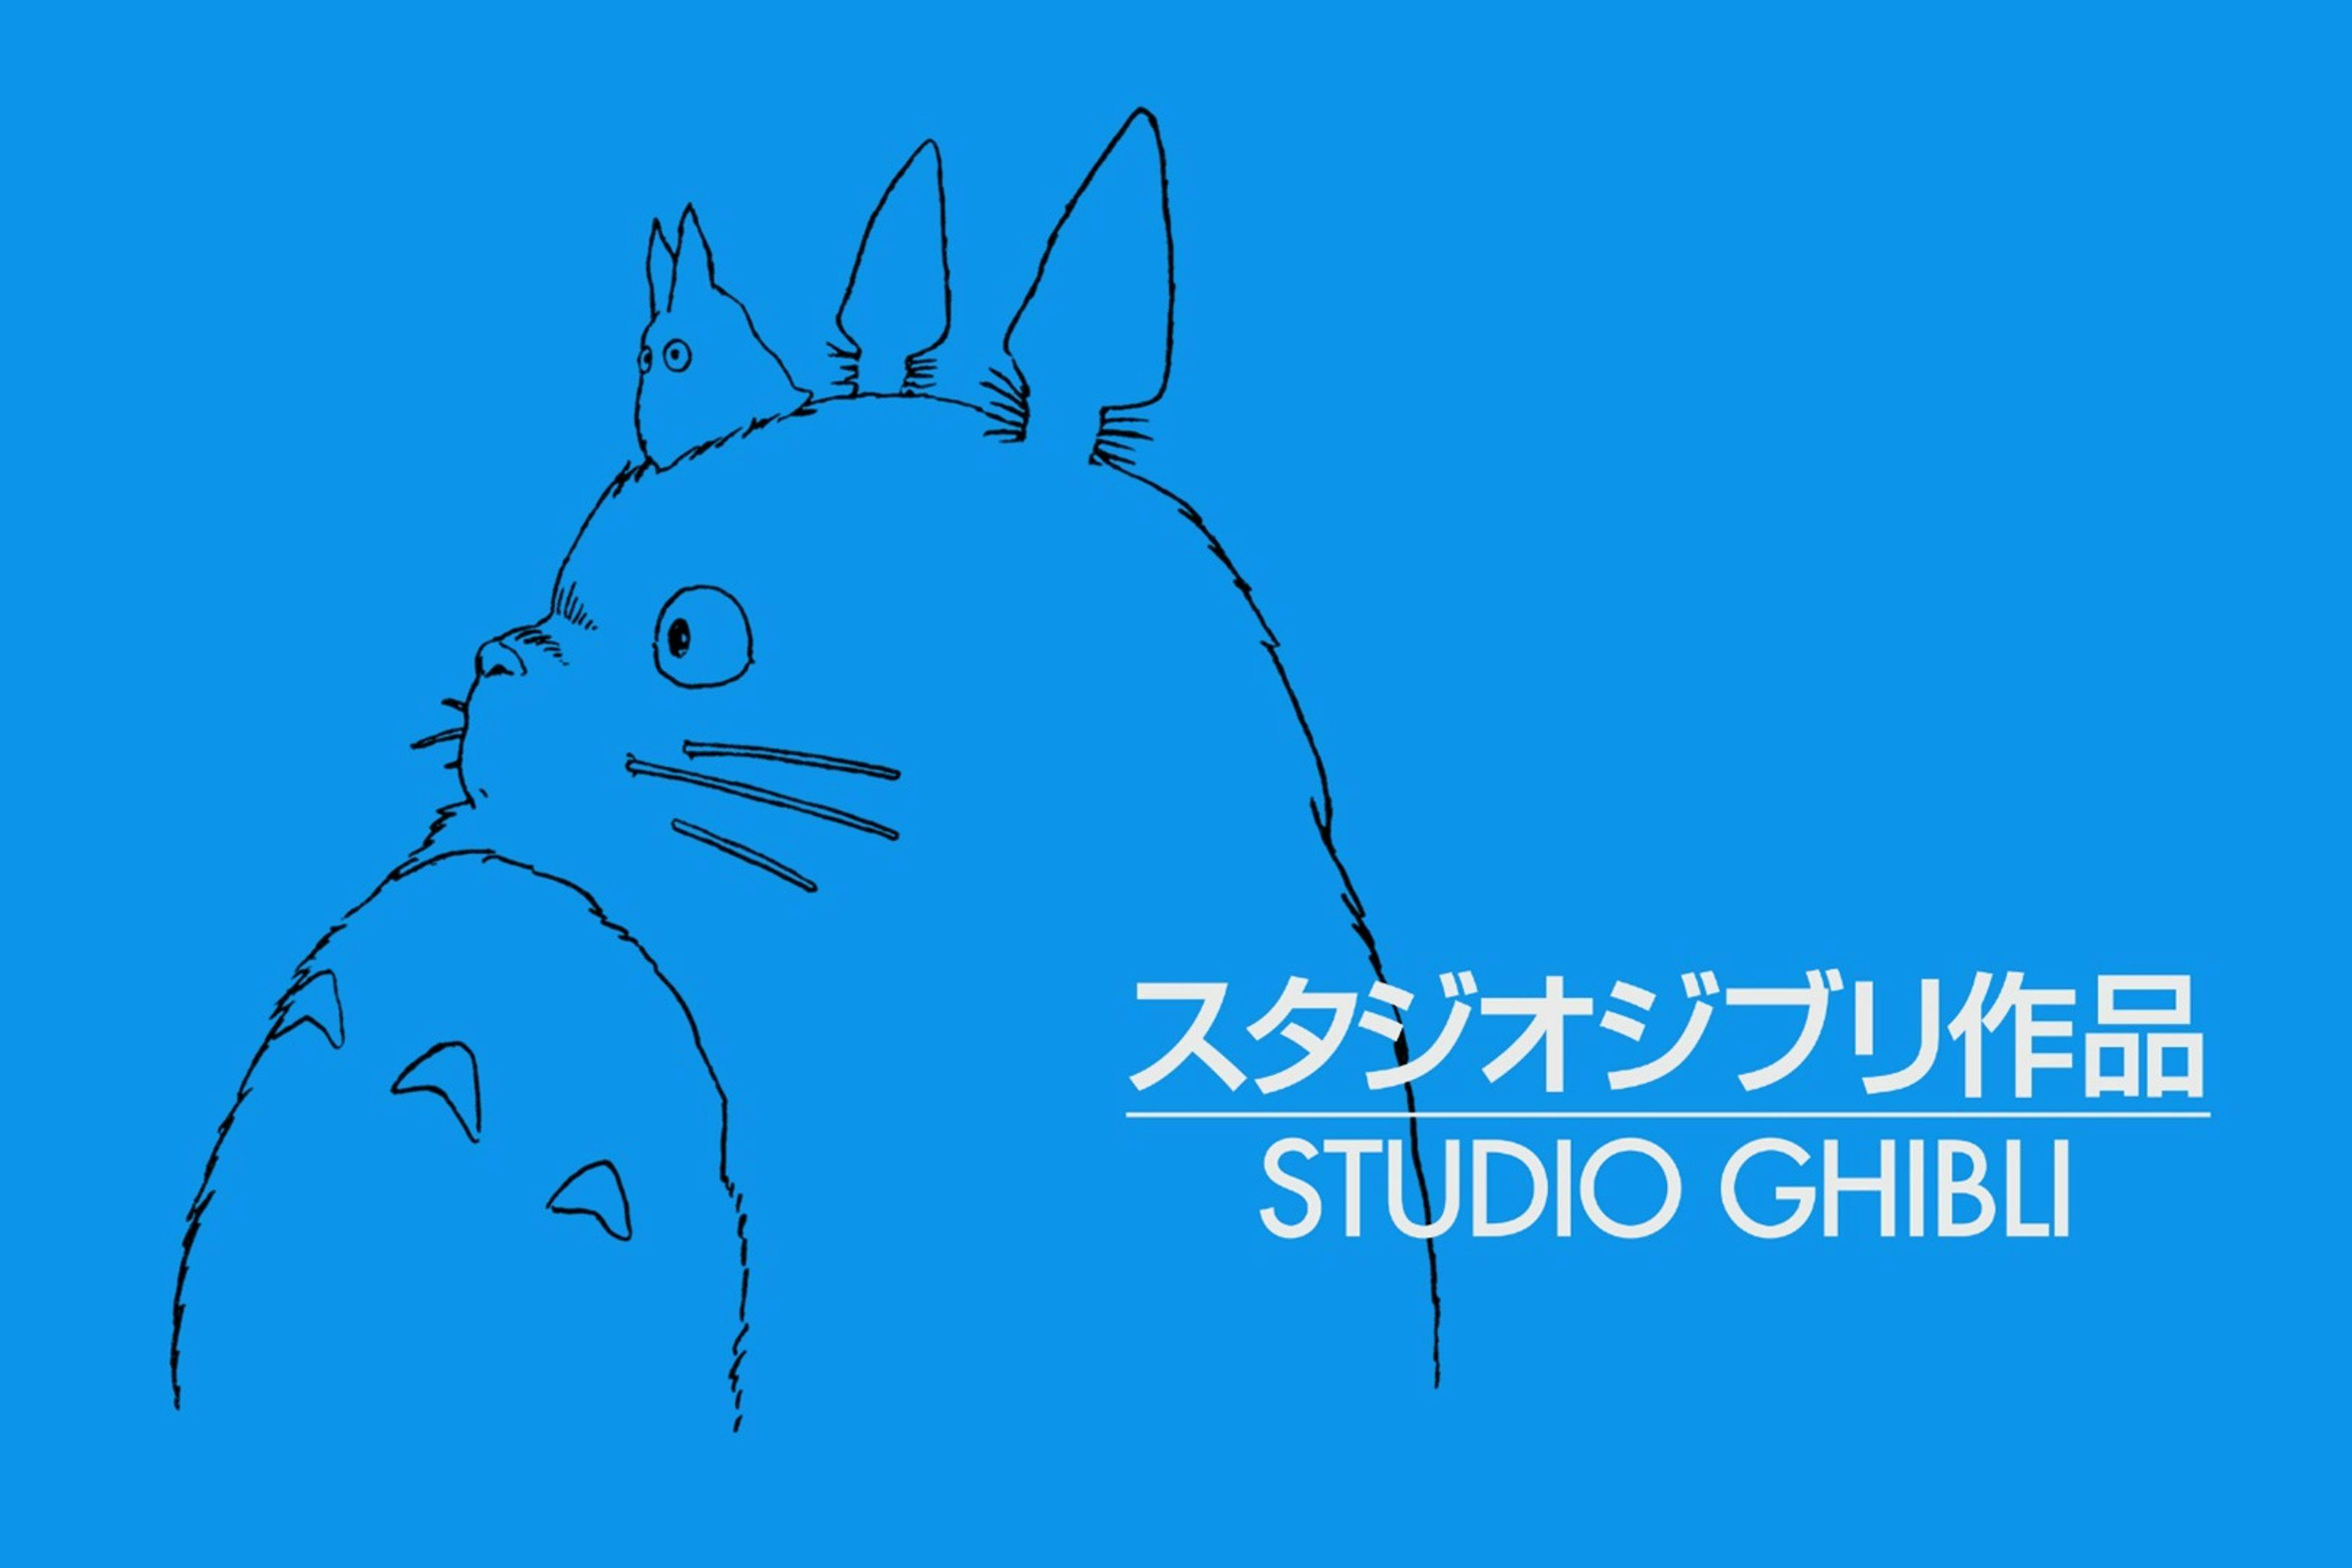 Imagen corporativa del Studio Ghibli, uno de los estudios de animación más importantes de la historia del cine